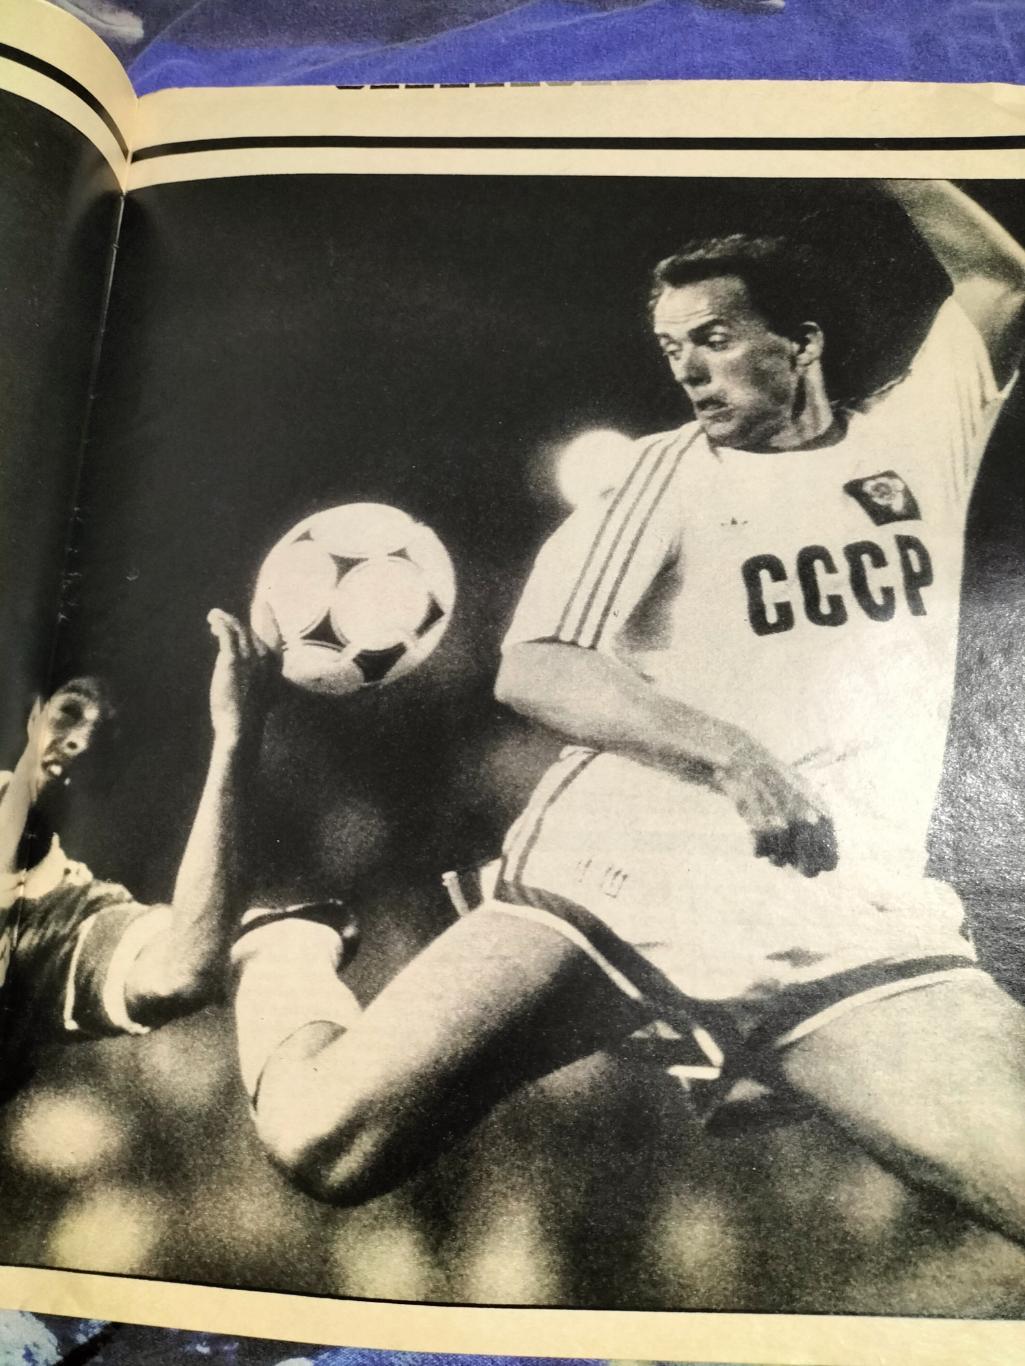 Журнал Stadion/Стадион №30 1988 год(Итоги Чемпионата Европы). 1